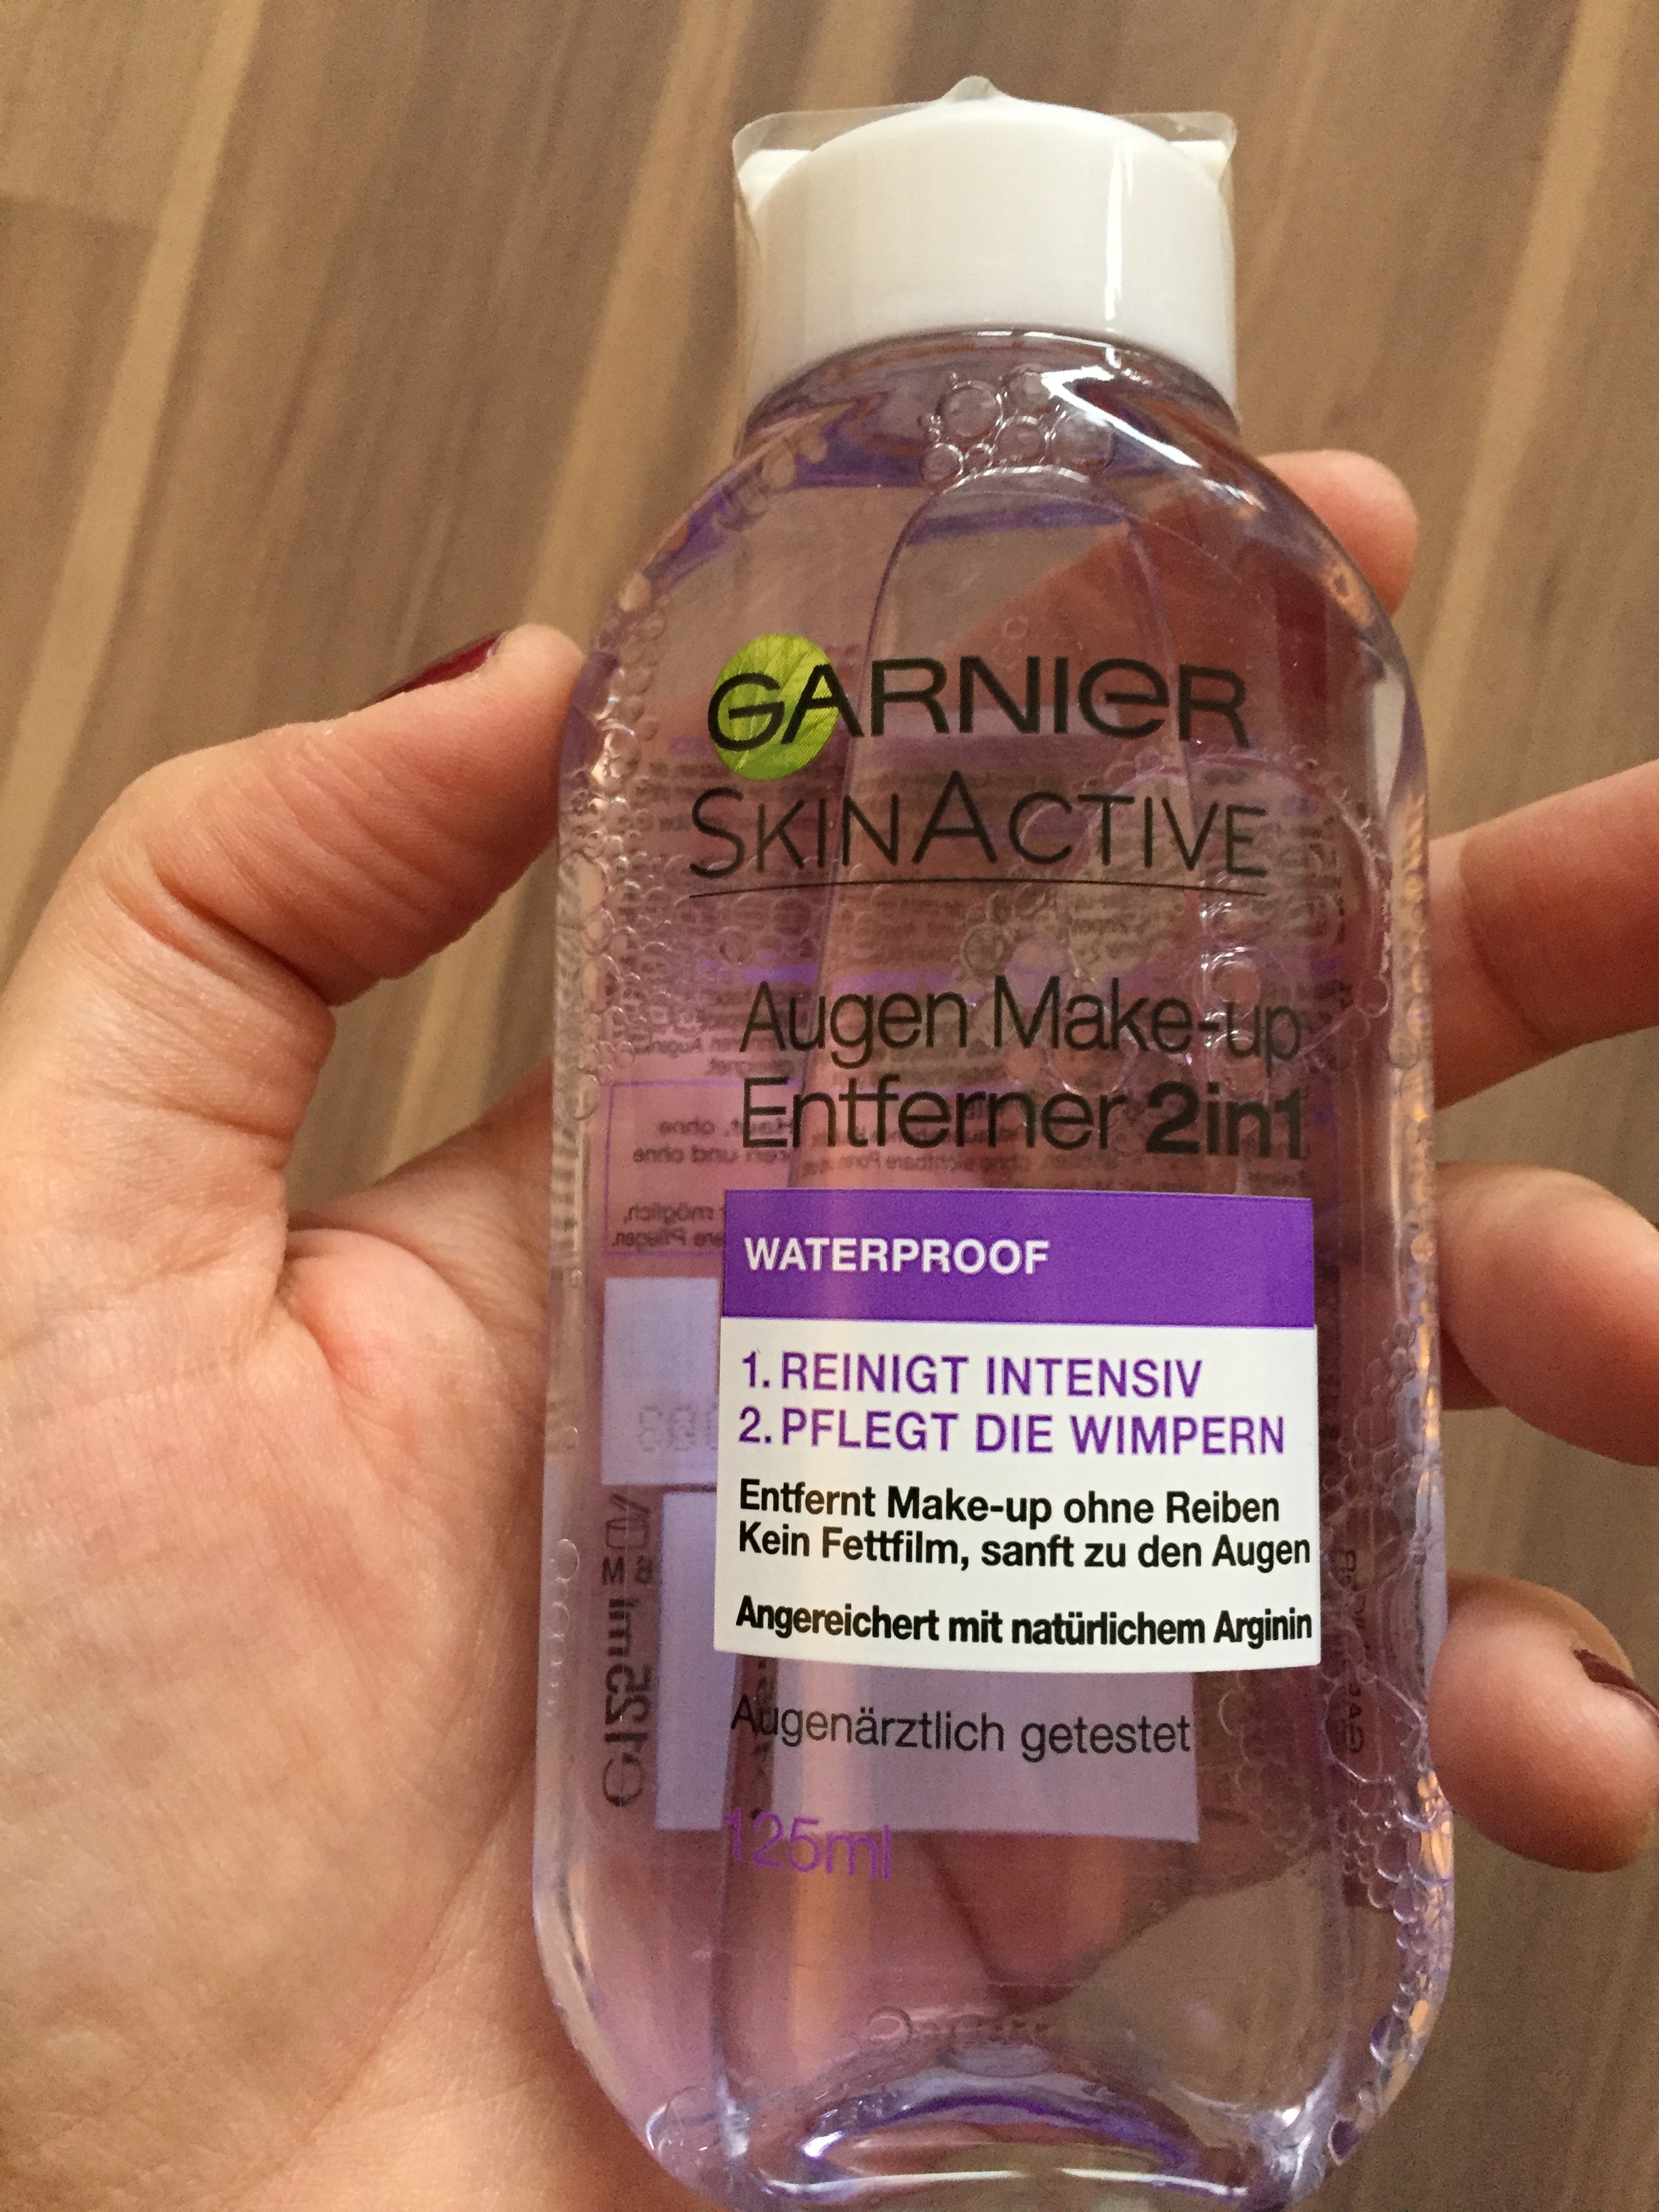 Produkttest: Garnier Skin Augen – Make-up Entferner2in1 Active missappledome